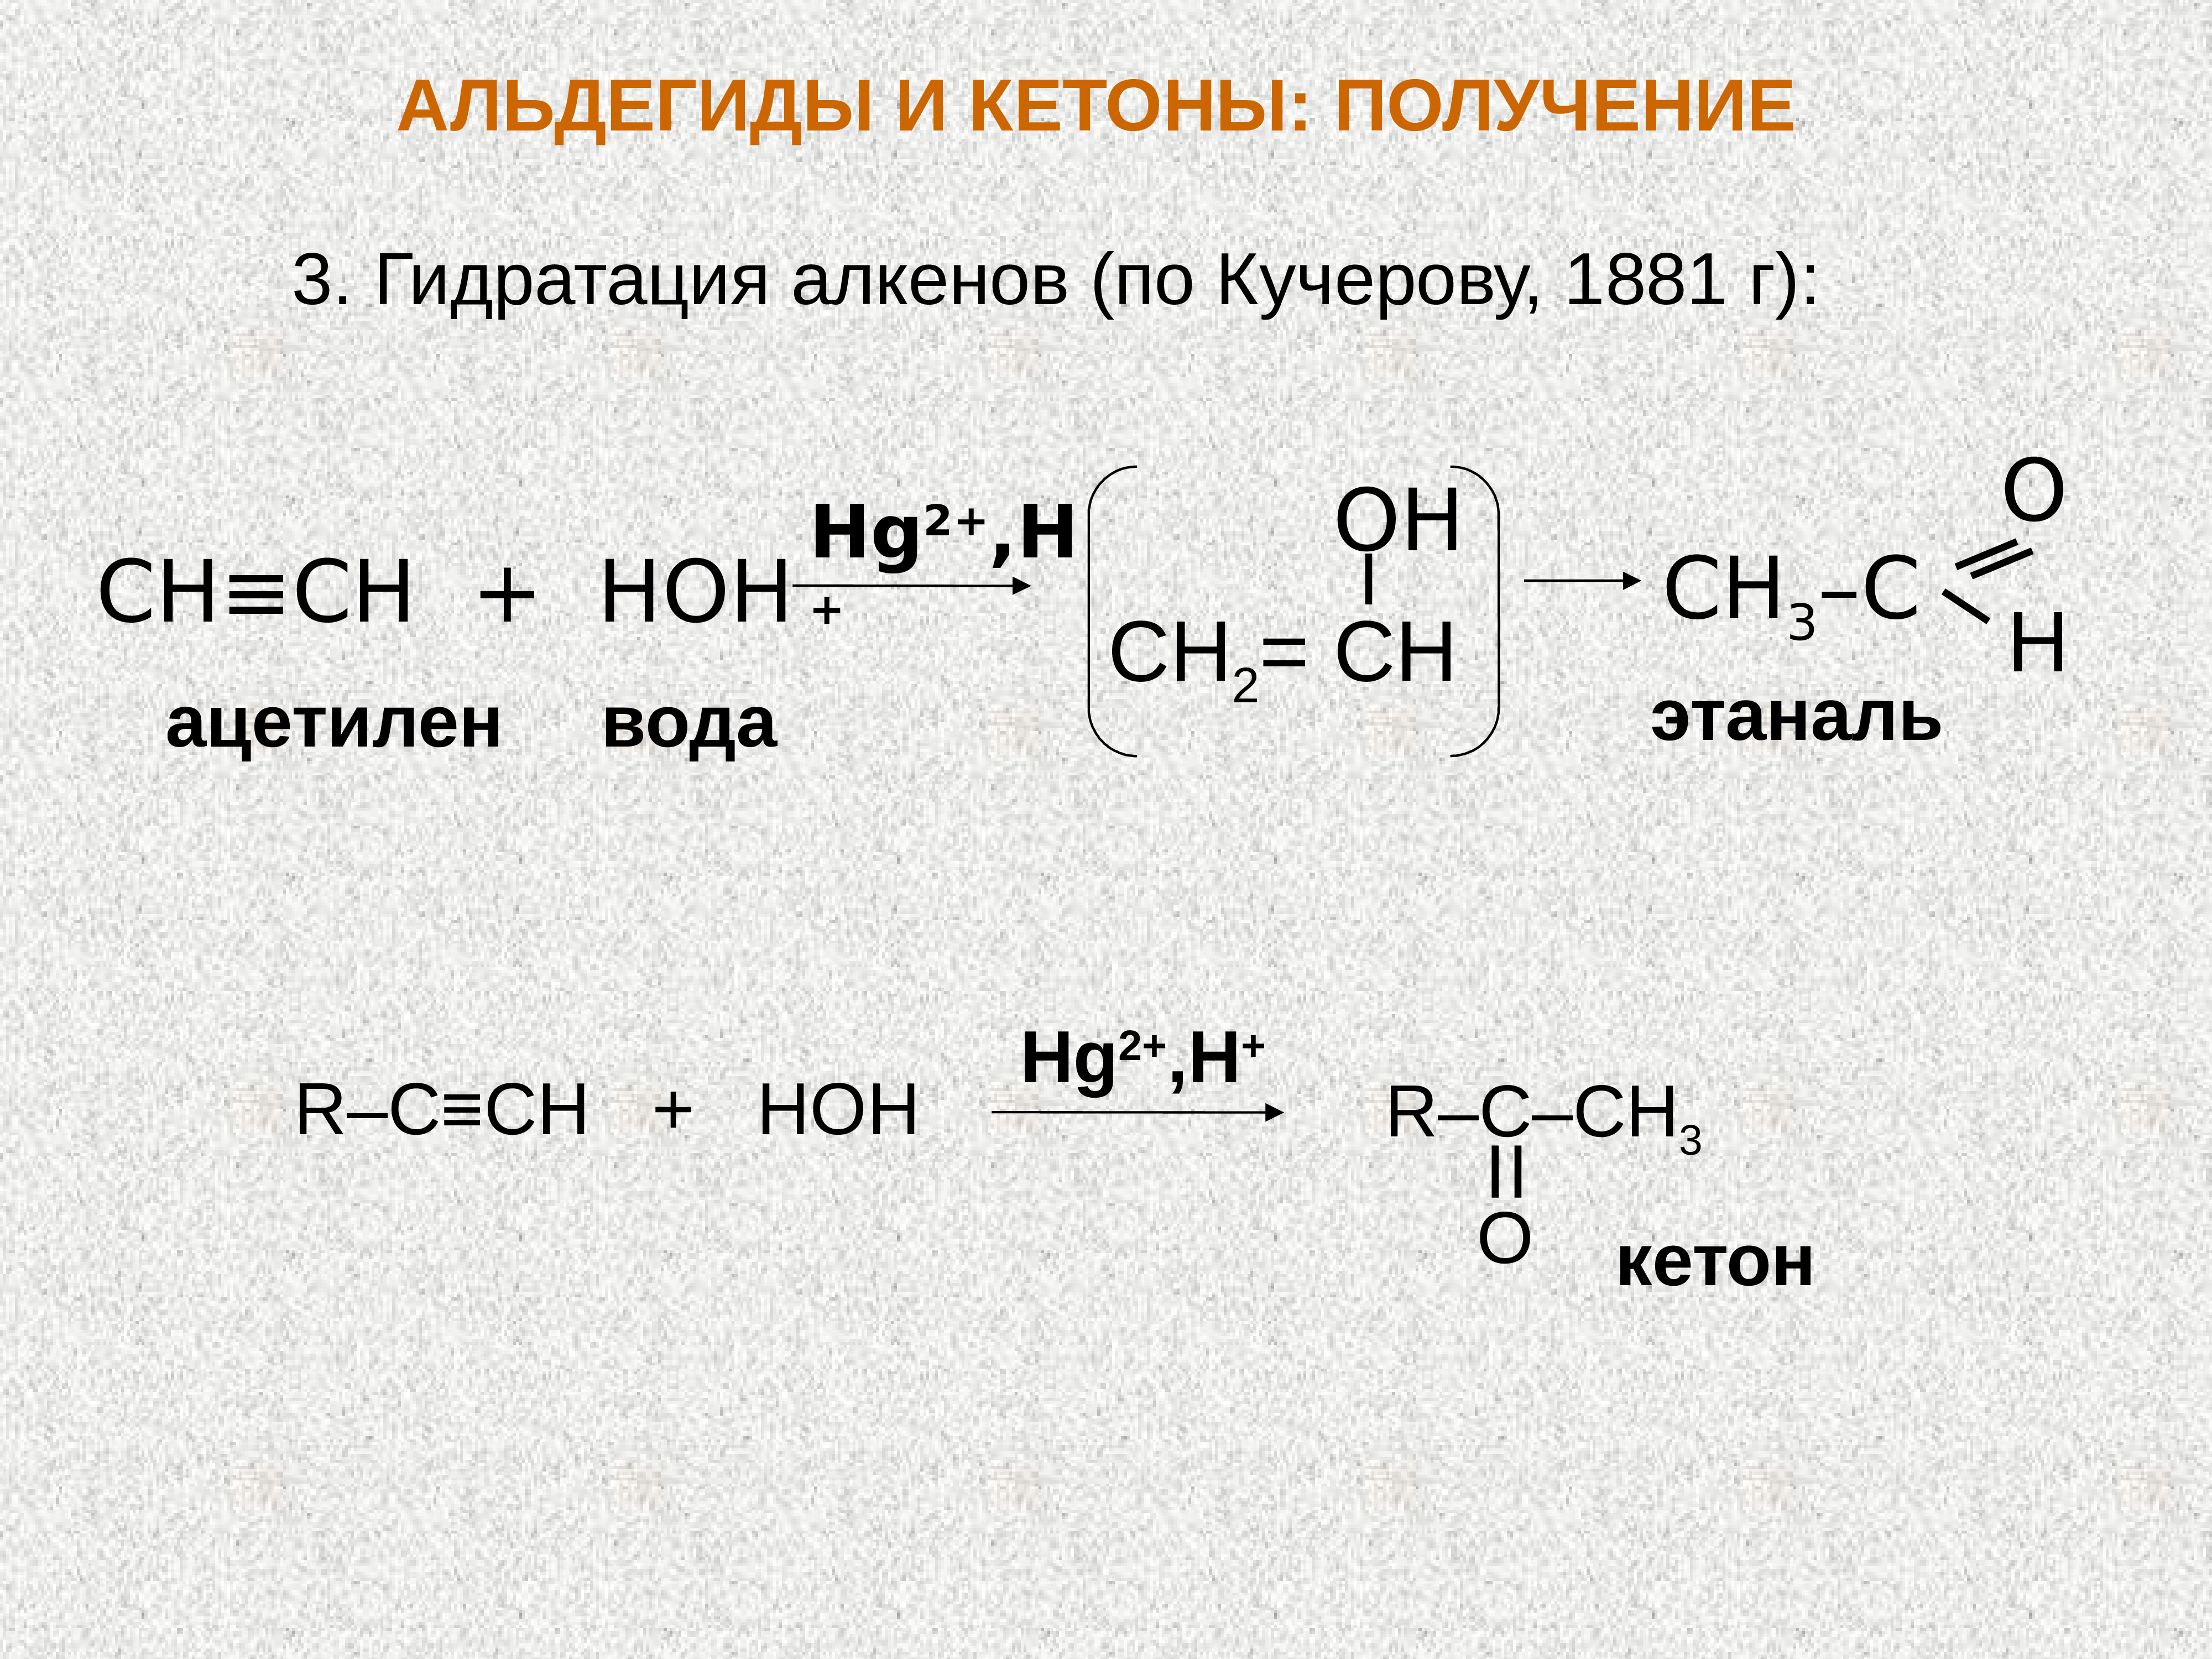 Этилен пропен ацетилен. Ацетилен и вода hg2+. Ацетилен + диэтилкетон. Ацетилен и вода реакция. Ацетилен плюс вода.